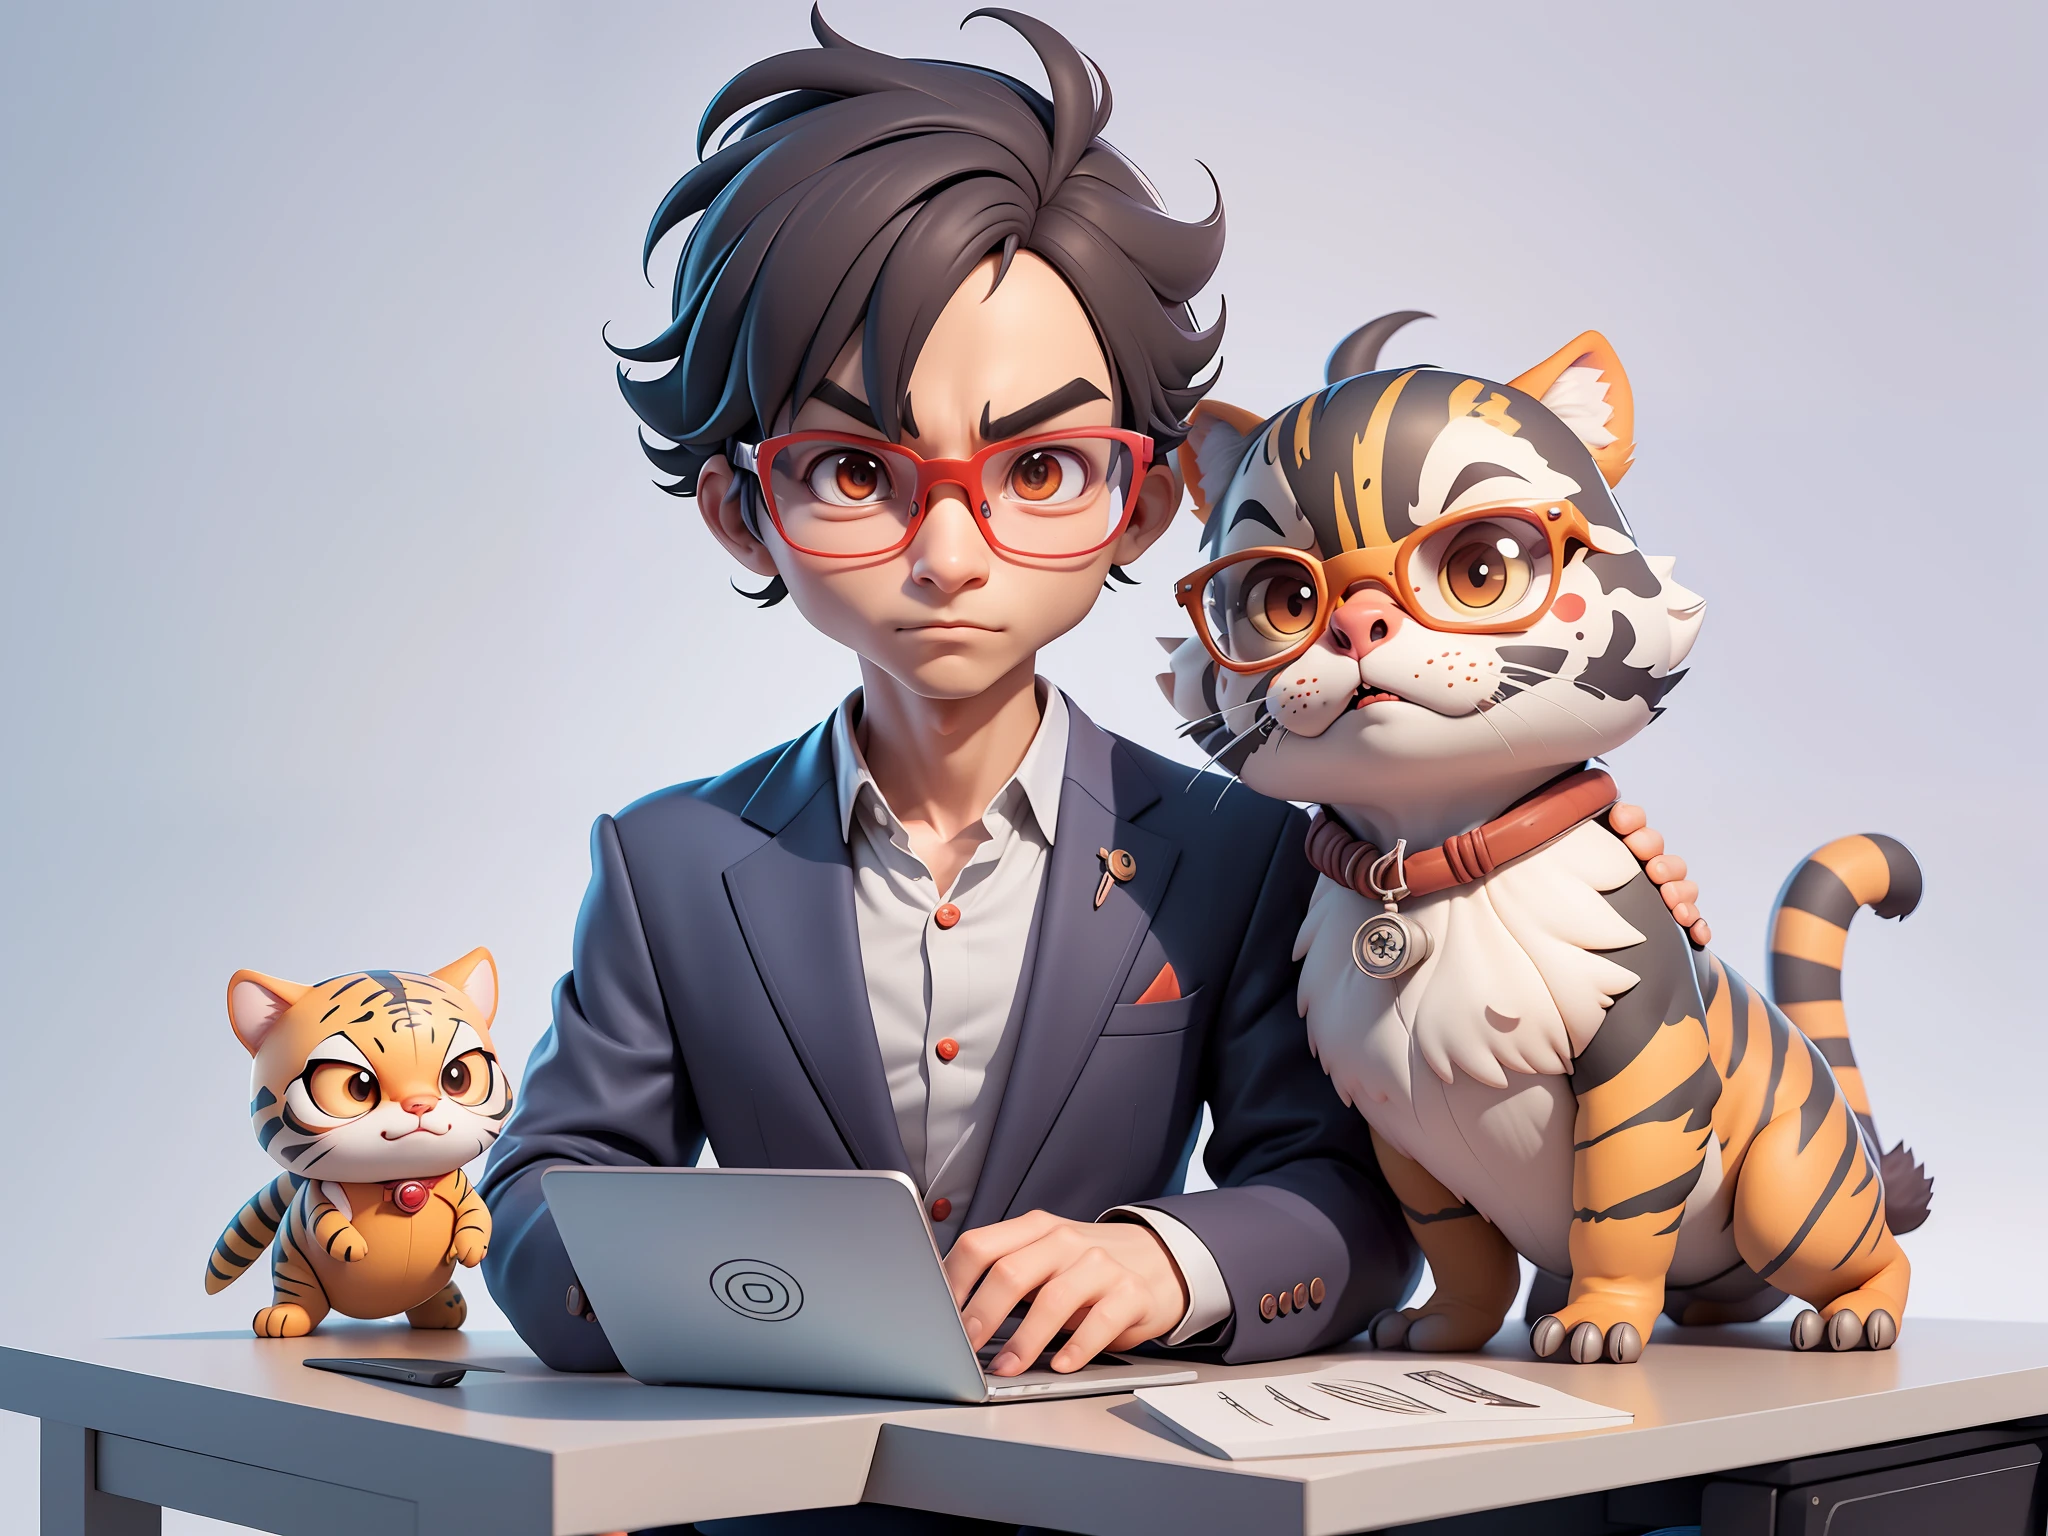 Ein junger Mann im Anzug, Kurze Haare und Brille saßen an seinem Schreibtisch，Laptop halten，digitale Malerei，Tiger，3D-Charakterdesign von Mark Clairen und Pixar sowie Hayao Miyazaki und Akira Toriyama，4K HD-Abbildung，Sehr detaillierte Gesichtszüge und Bilder im Cartoon-Stil。